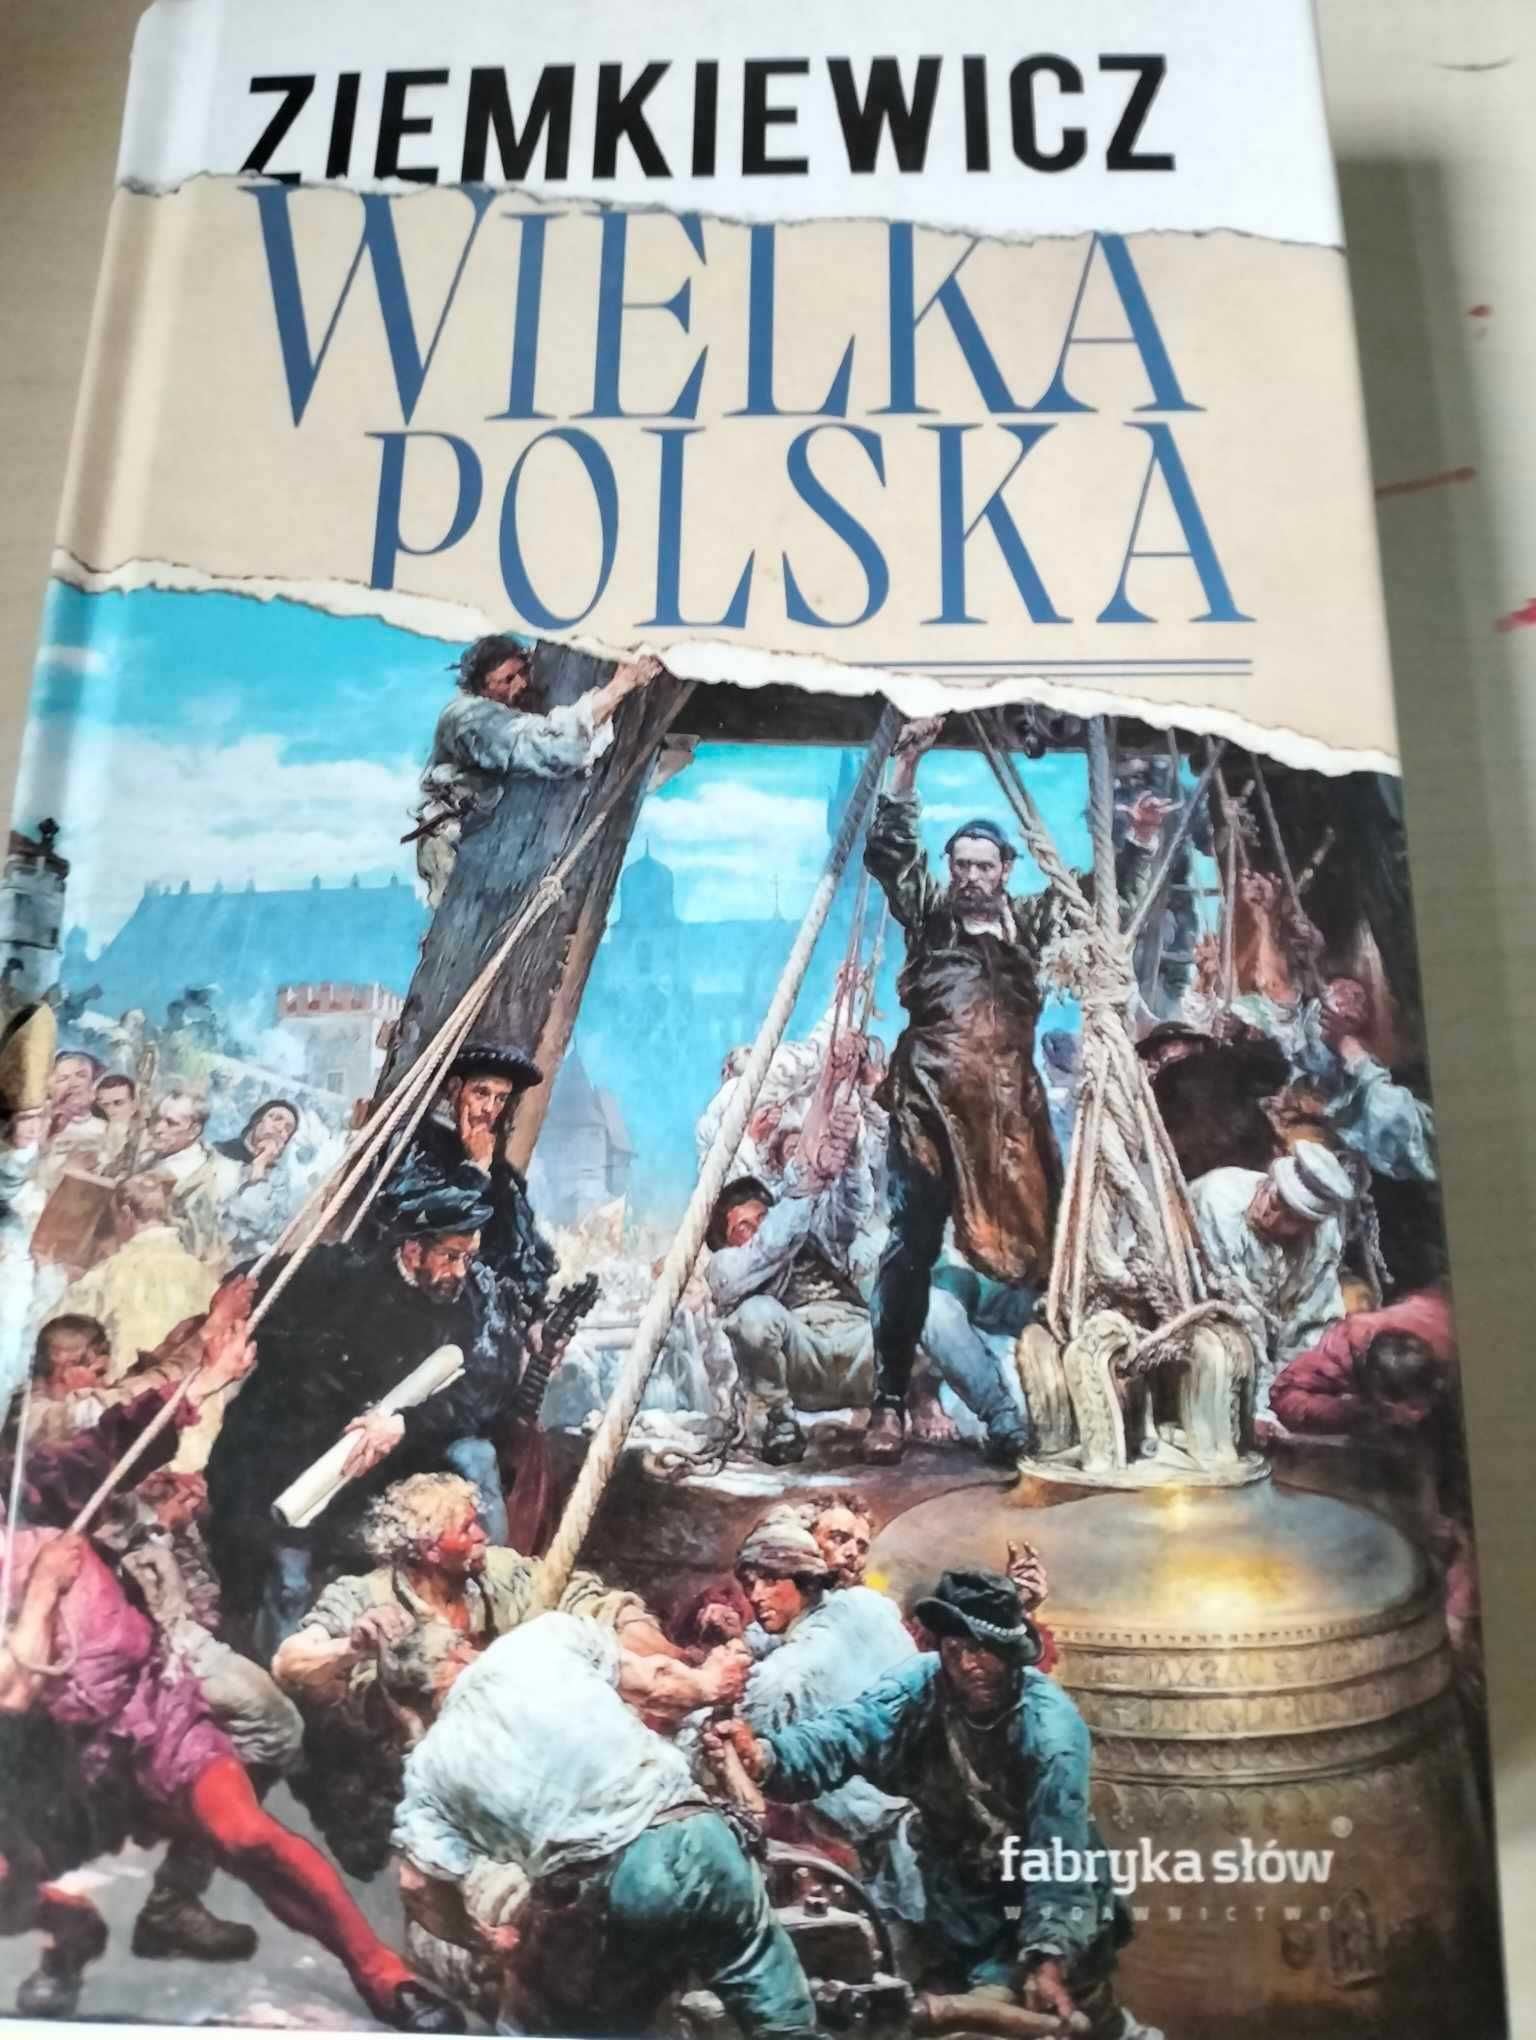 Wielka Polska - Ziemkiewicz